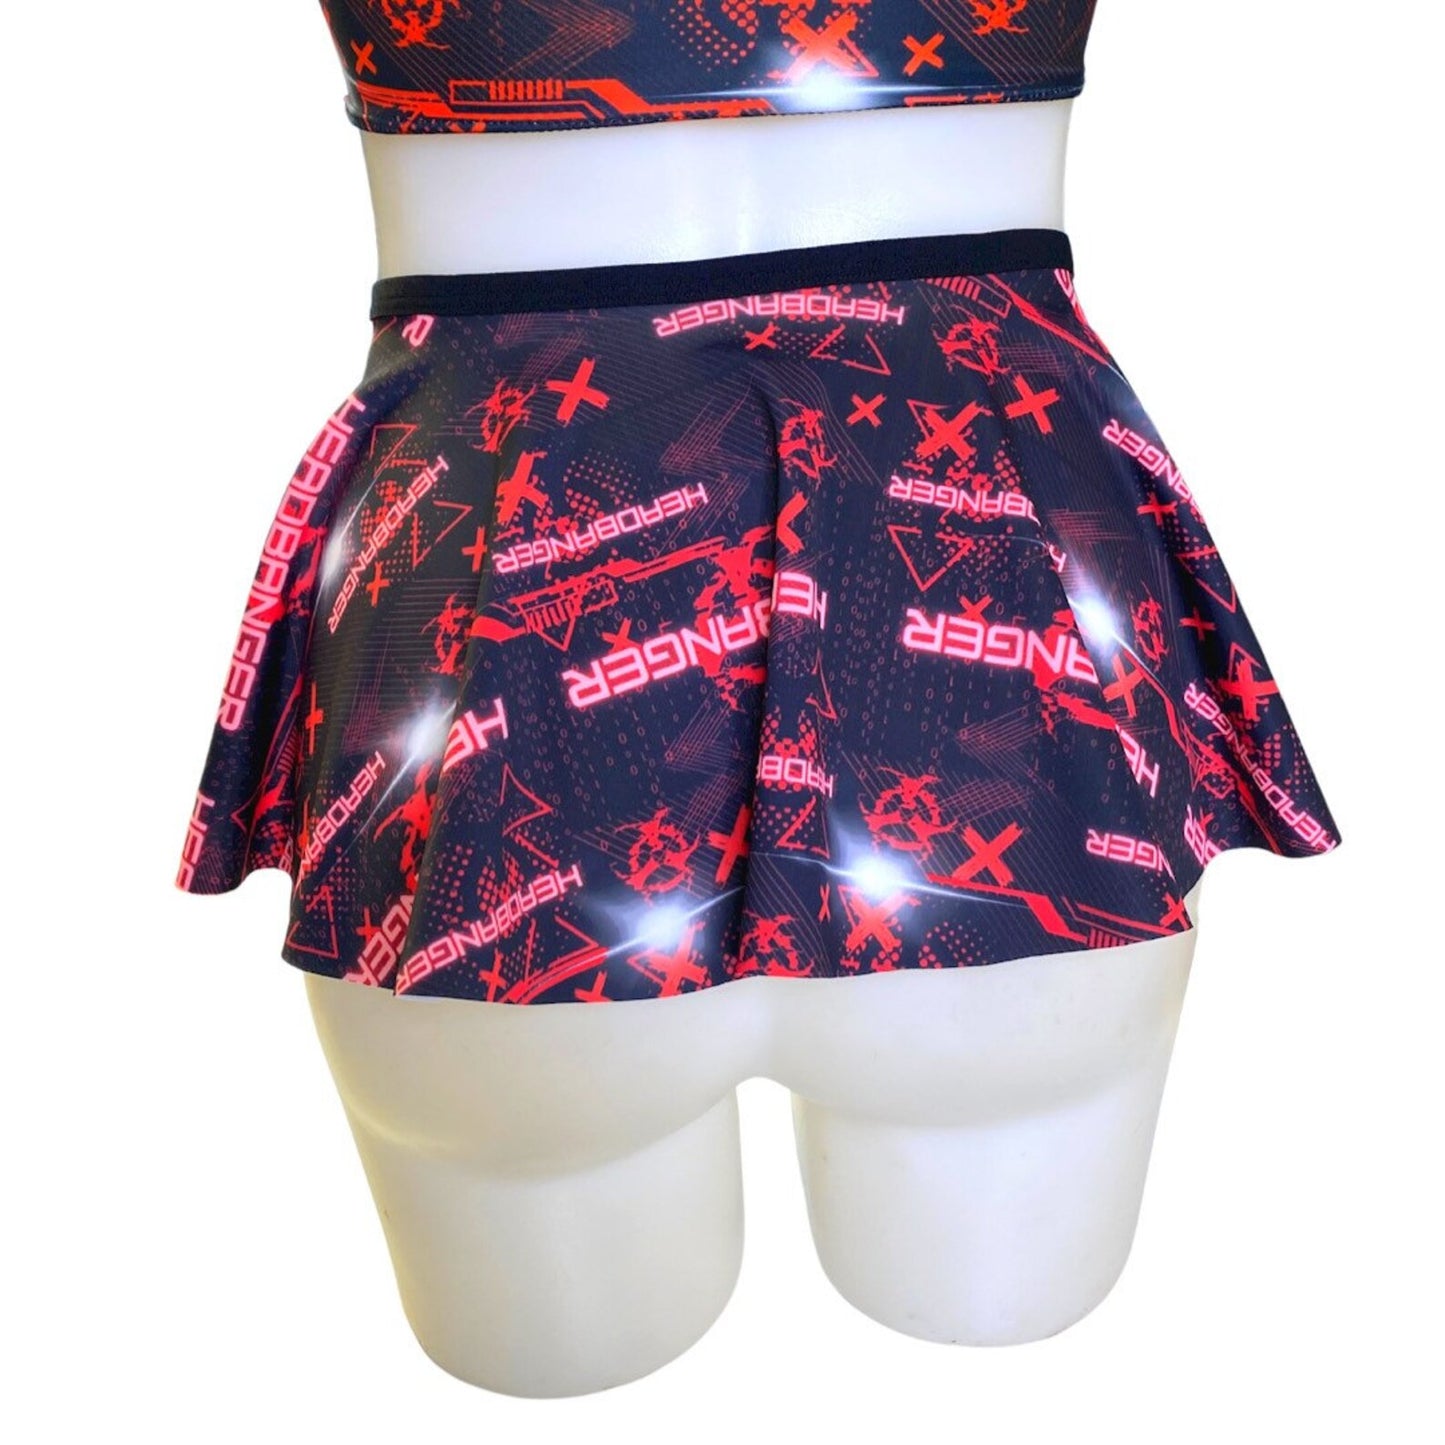 Headbanger Ultra Mini Buckle Skirt